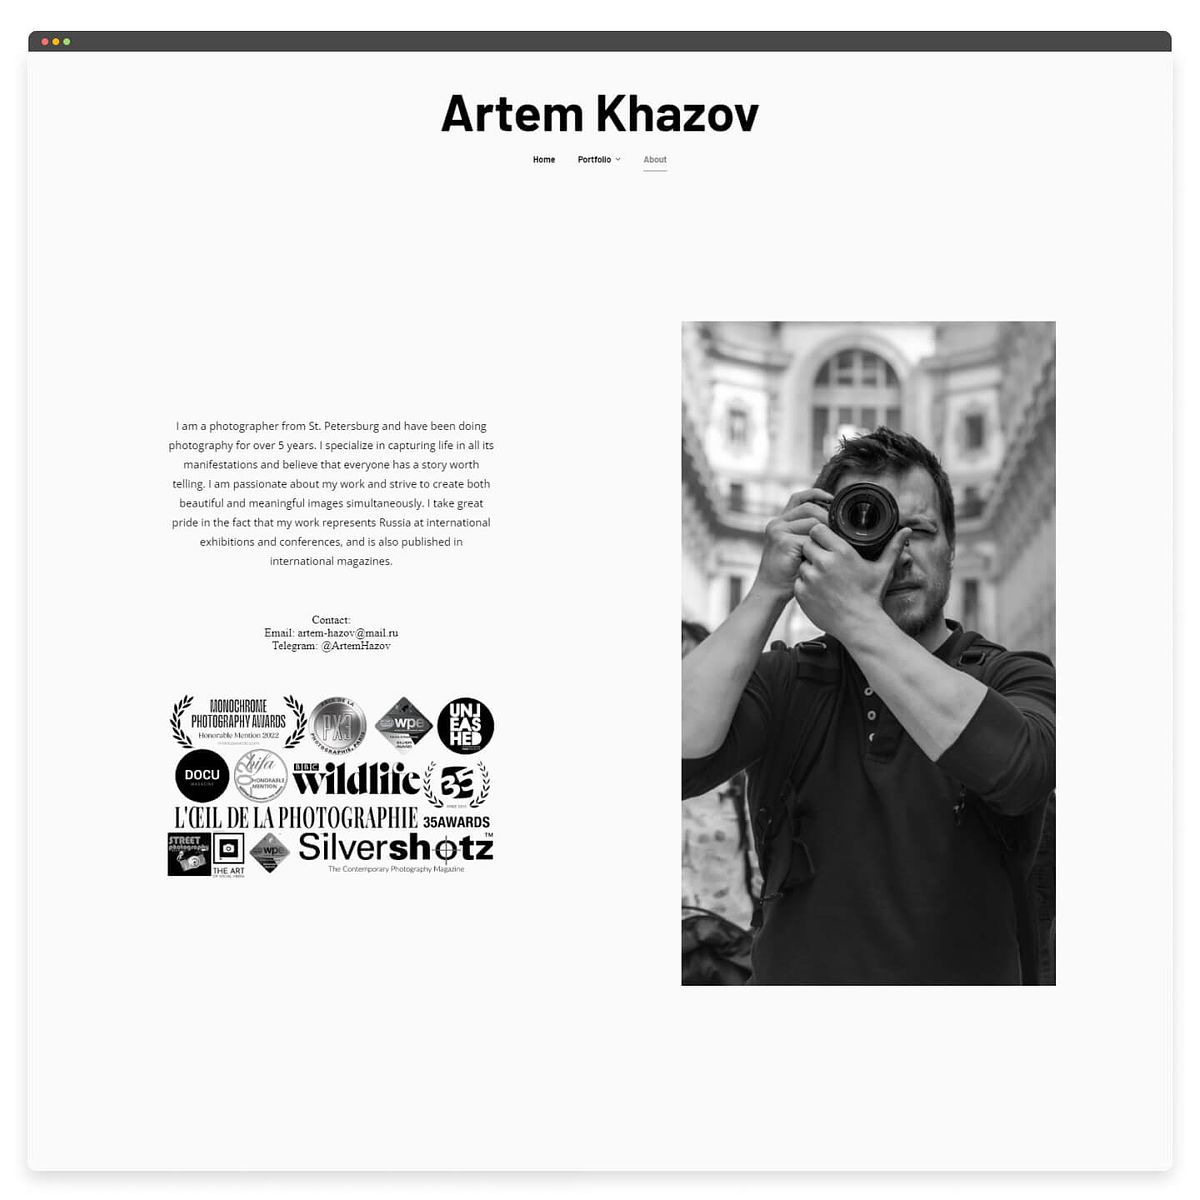 Artem Khazov’s photography portfolio